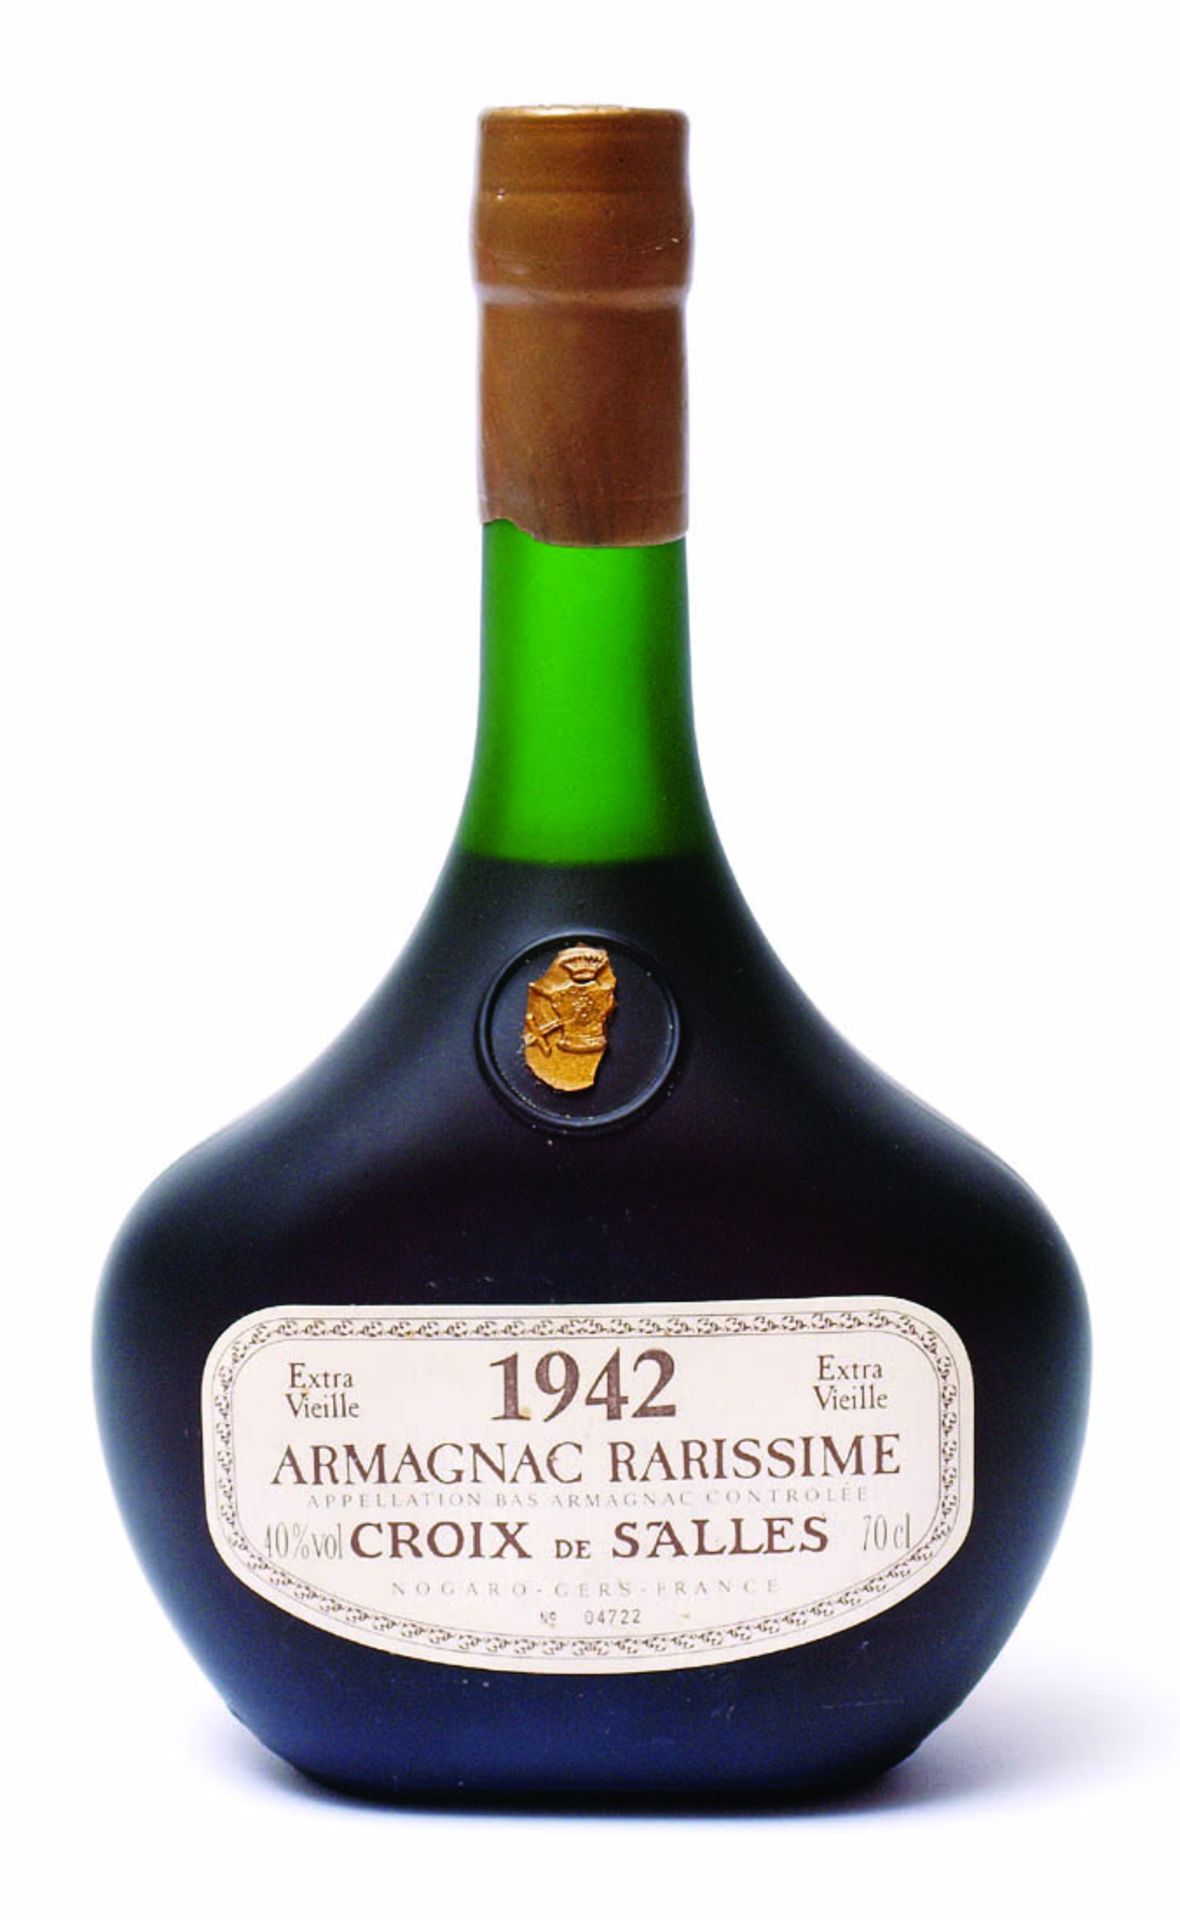 Armagnac "Croix de Salles", 1942Numerierte Flasche 04722, 0,7l. Mit Zertifikat. Füllstand über der